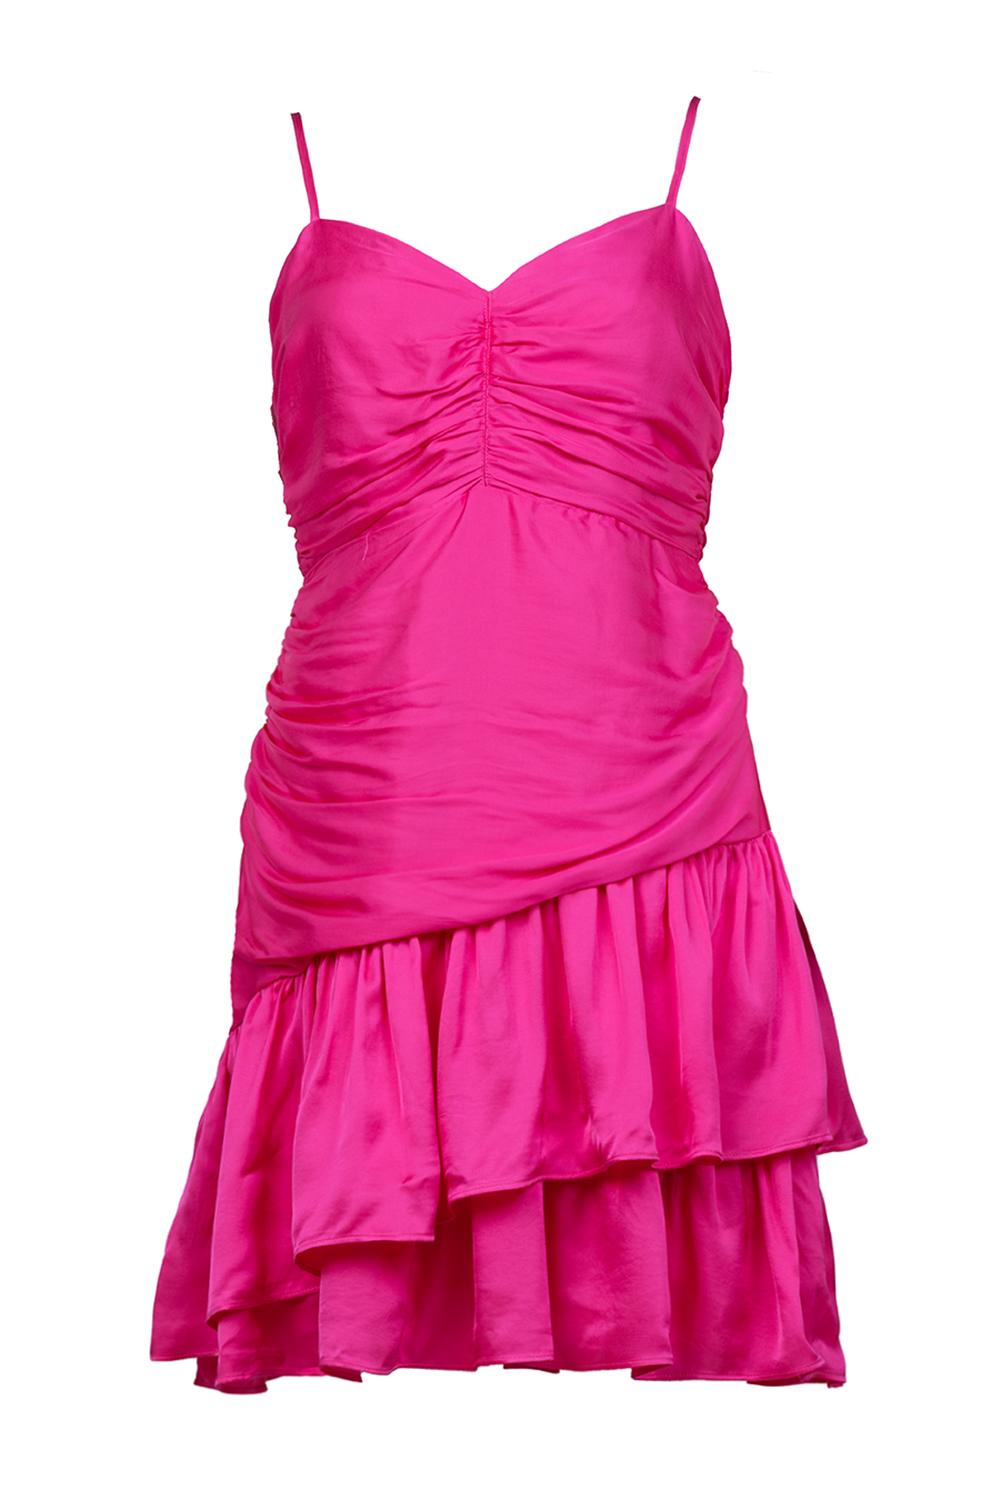 Suncoo Satijnen viscose jurk Cordoue roze